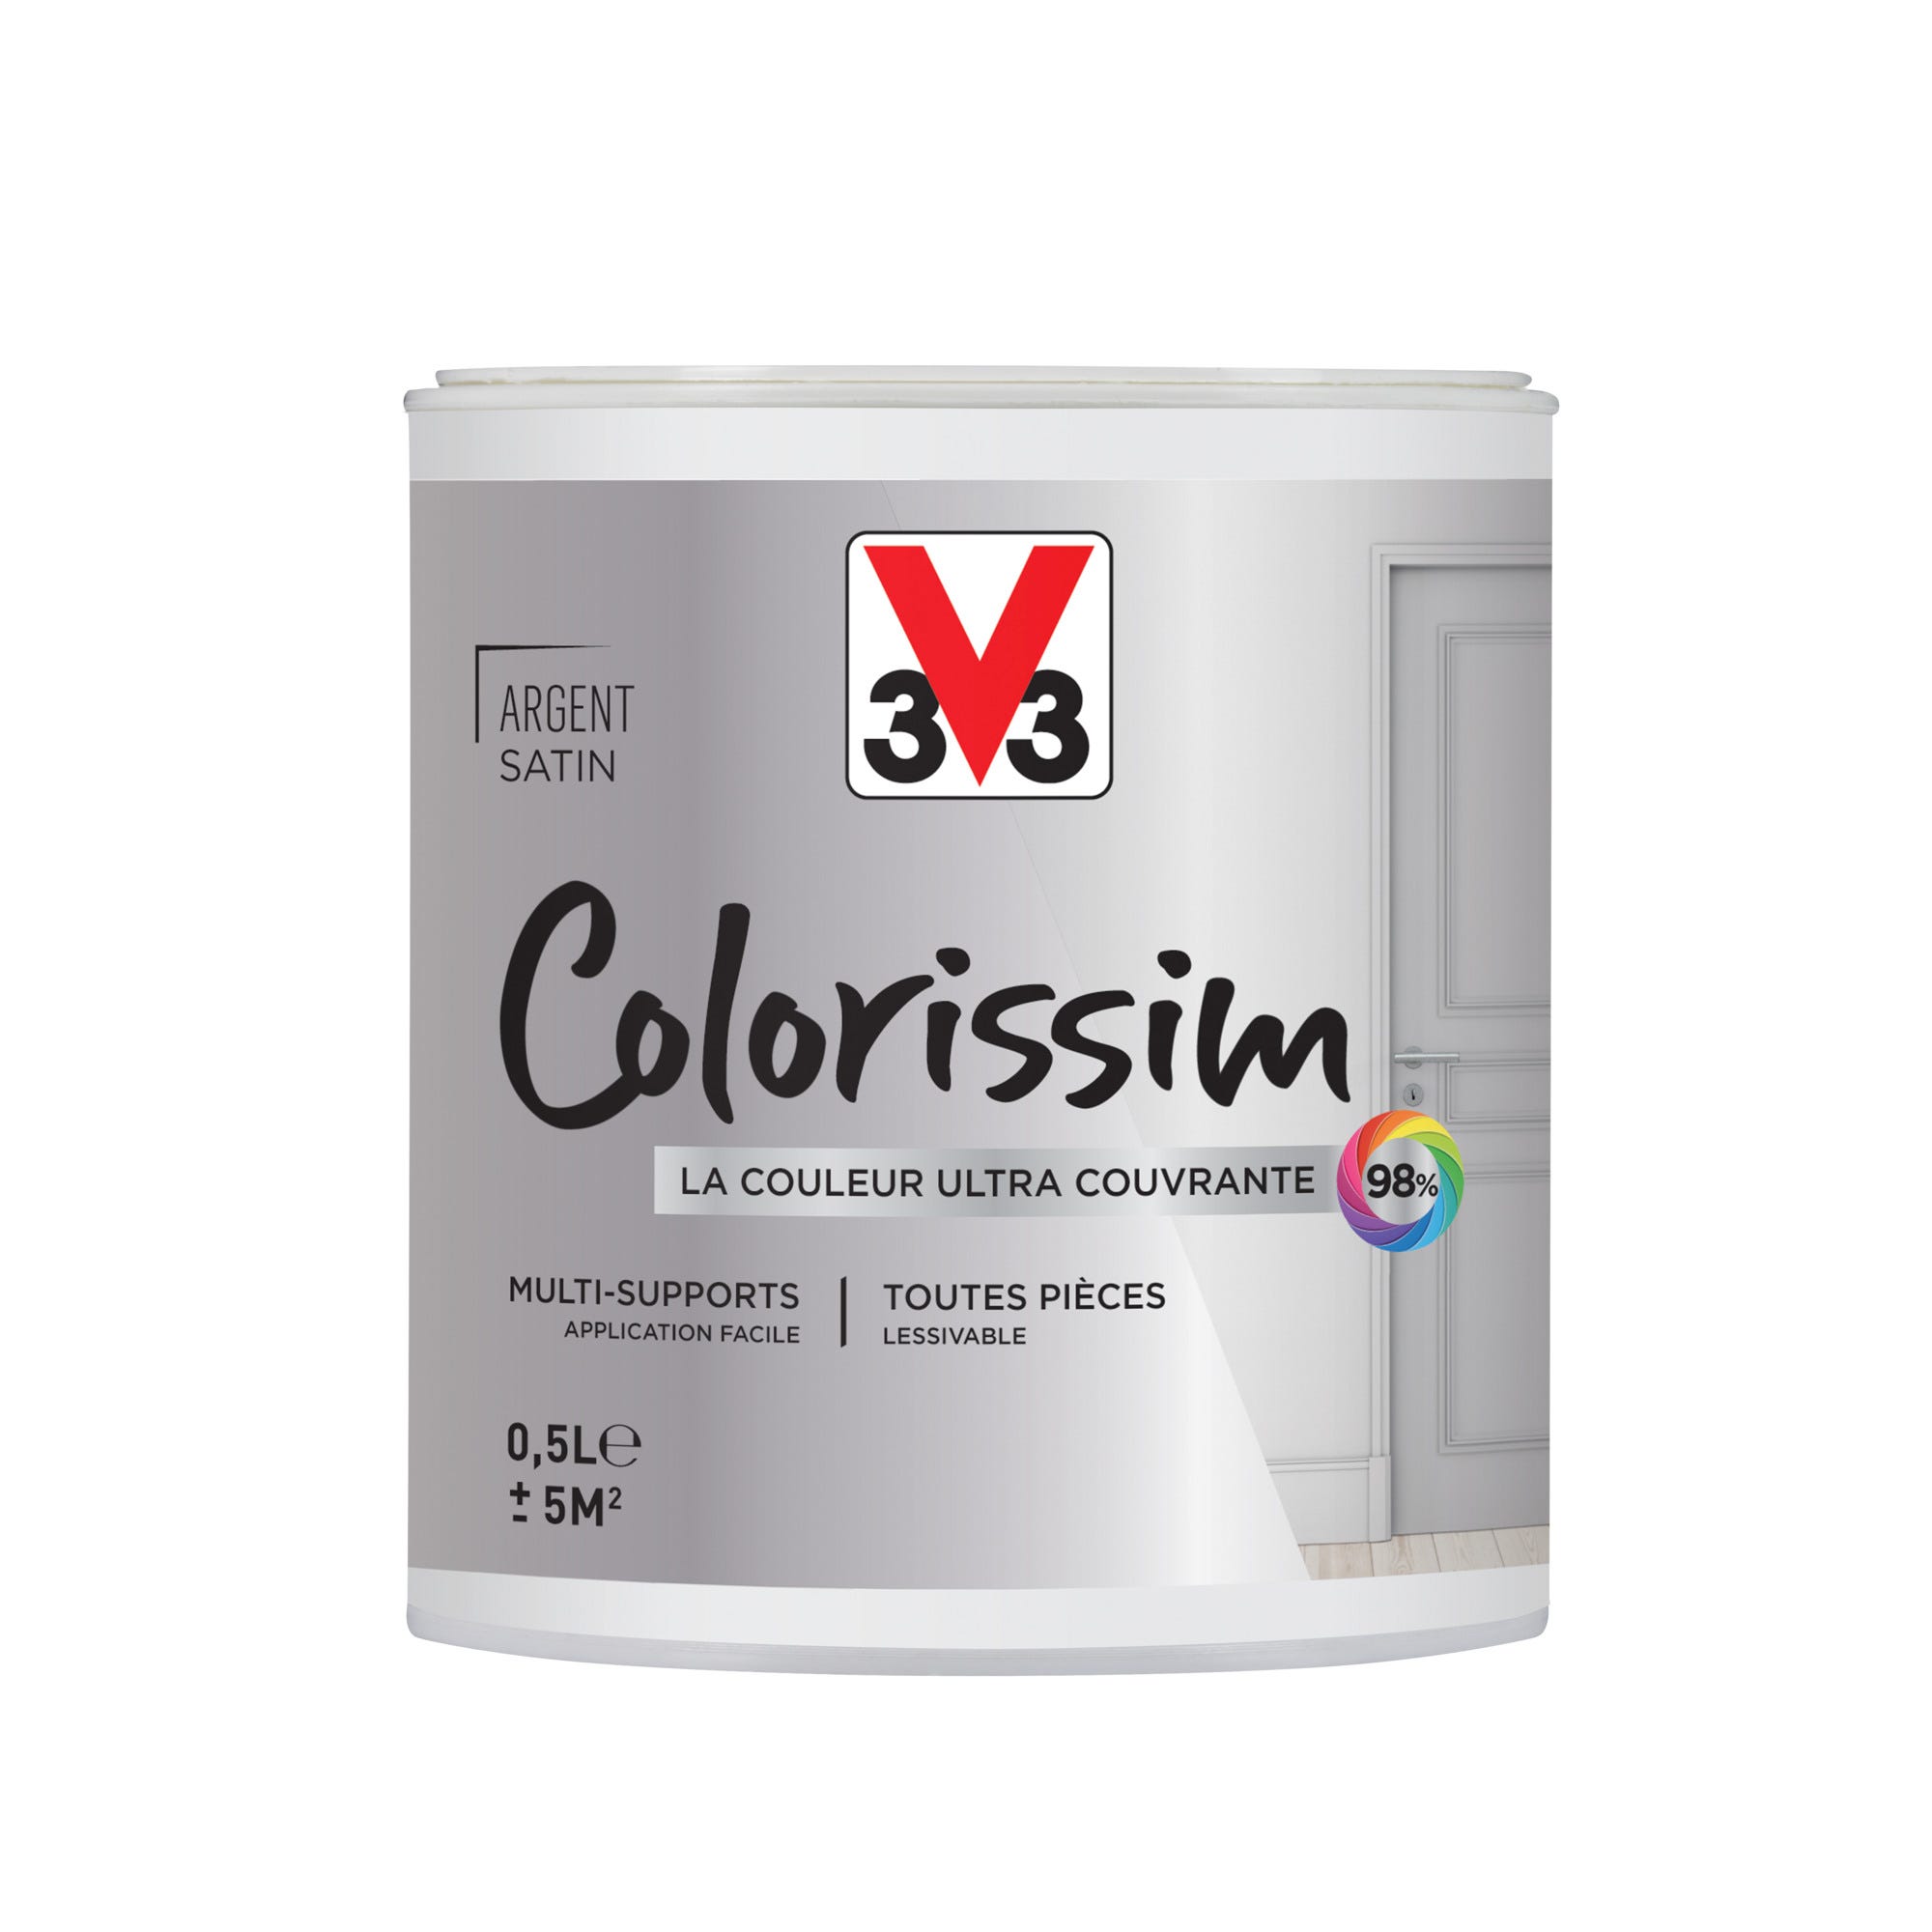 Peinture intérieure multi-supports acrylique satin argent 0,5 L - V33 COLORISSIM 0